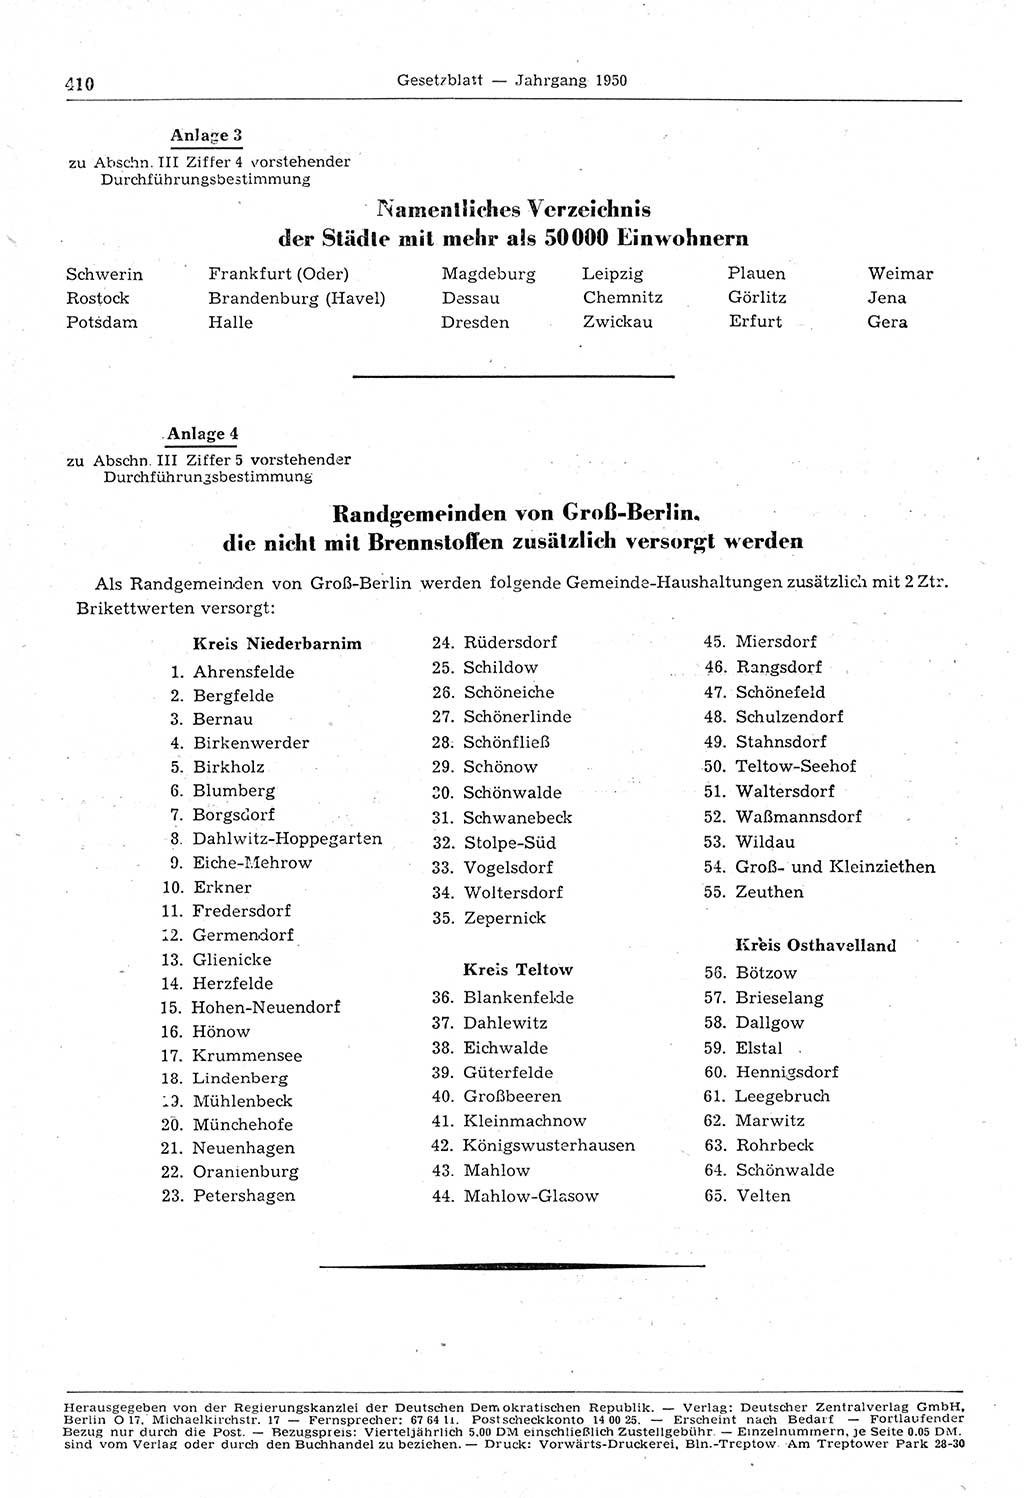 Gesetzblatt (GBl.) der Deutschen Demokratischen Republik (DDR) 1950, Seite 410 (GBl. DDR 1950, S. 410)